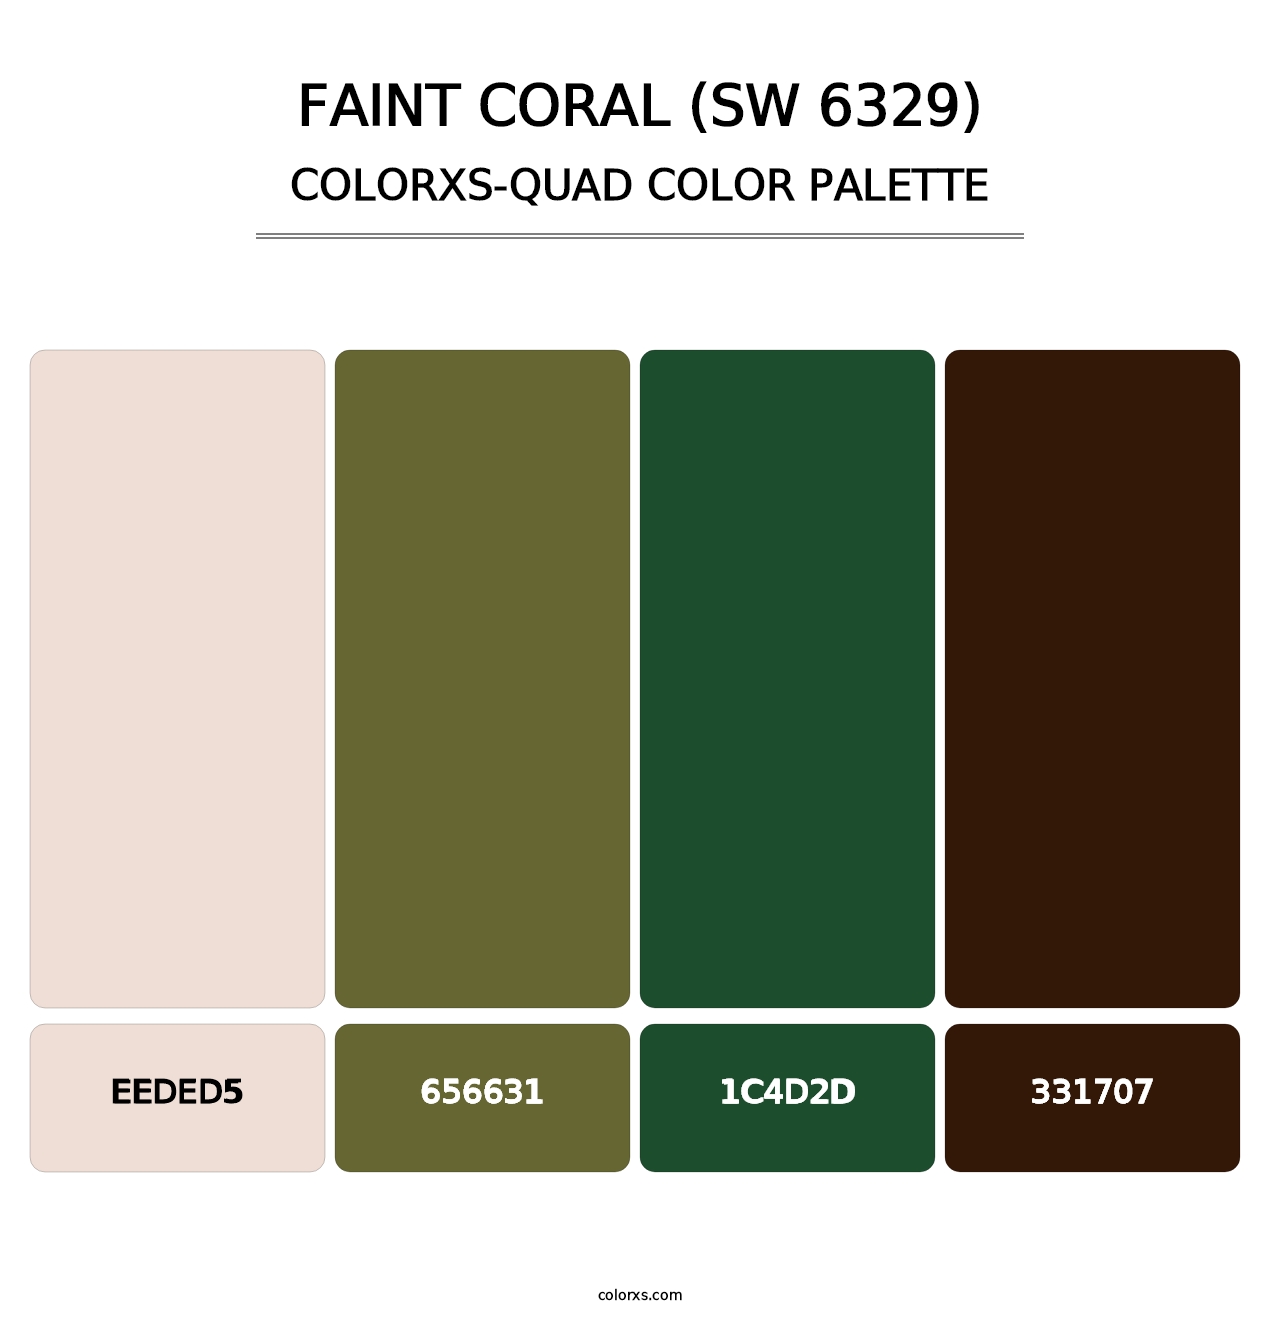 Faint Coral (SW 6329) - Colorxs Quad Palette